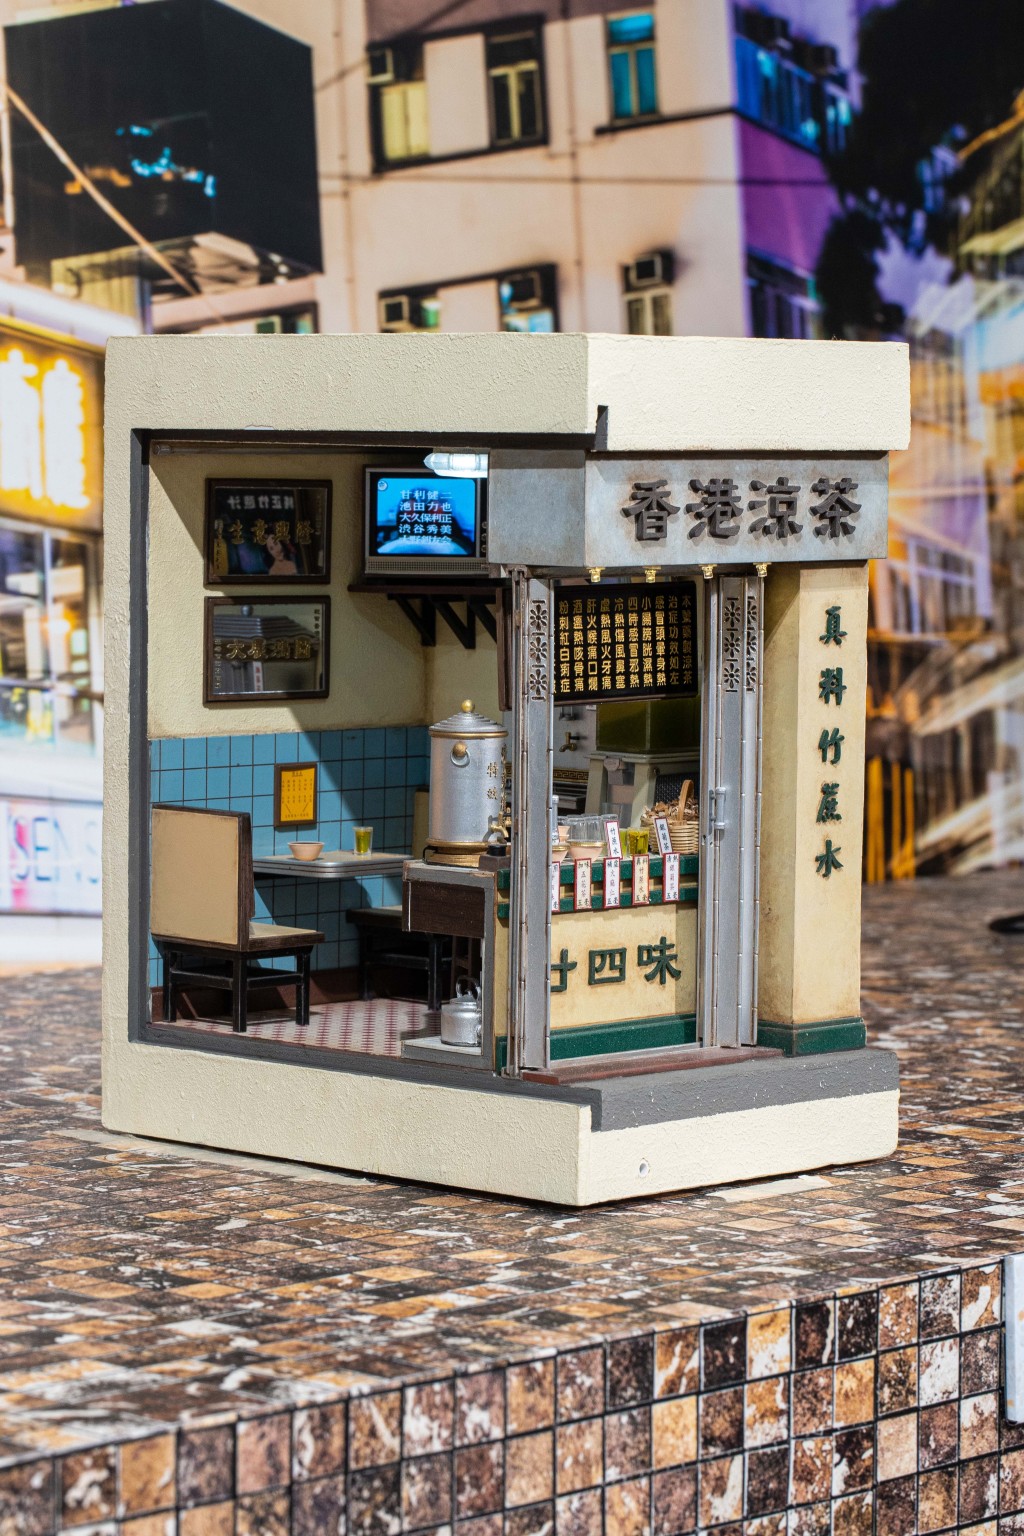 时代变迁，曾经遍布香港街头巷尾的传统《凉茶铺》逐渐在闹市消失。除了铺内常见的「廿四味」、「五花茶」、「银菊茶」等凉茶，模型还盛载著已被时代淘汰的「大牛龟」电视。